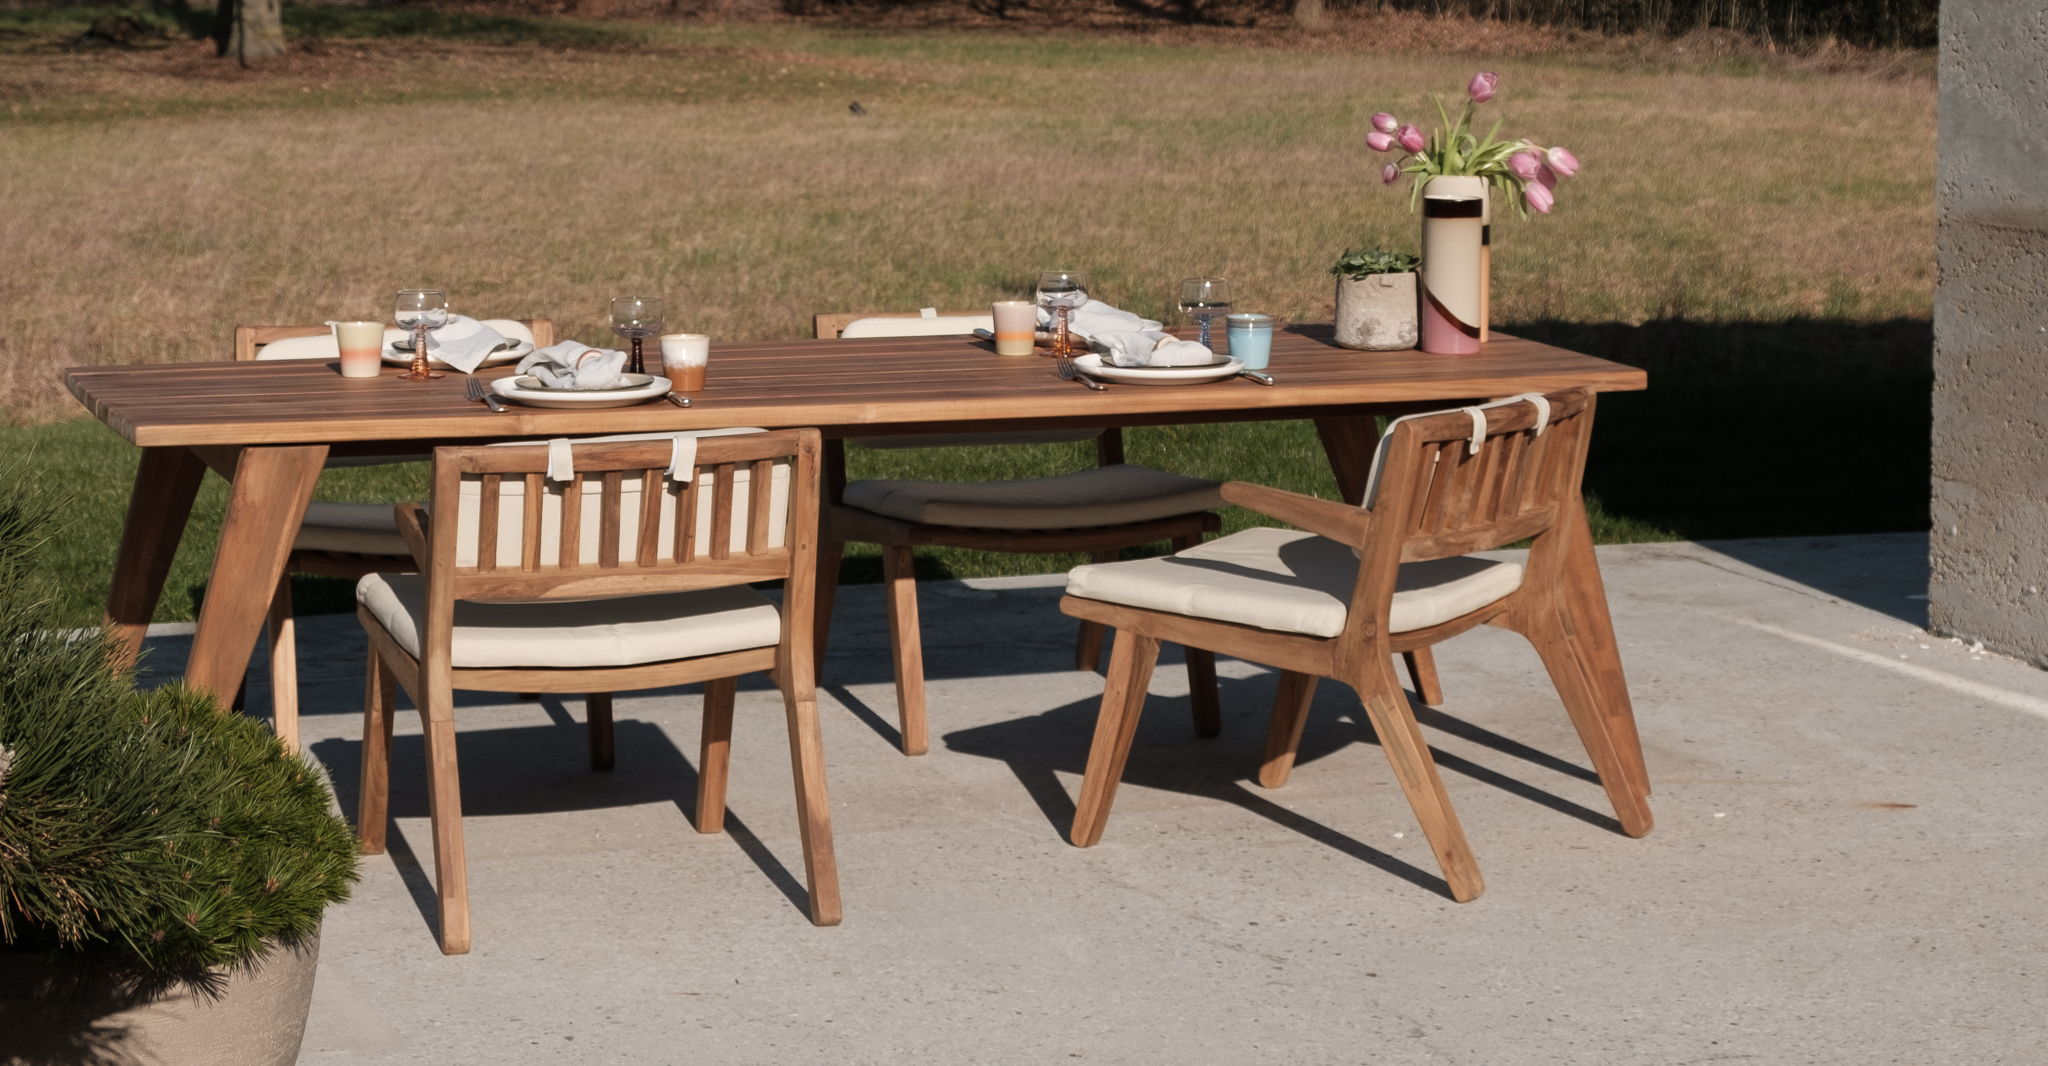 Hét pronkstuk van de Furnified outdoor collectie: de Sierra eettafel met Zeno low dining stoelen.